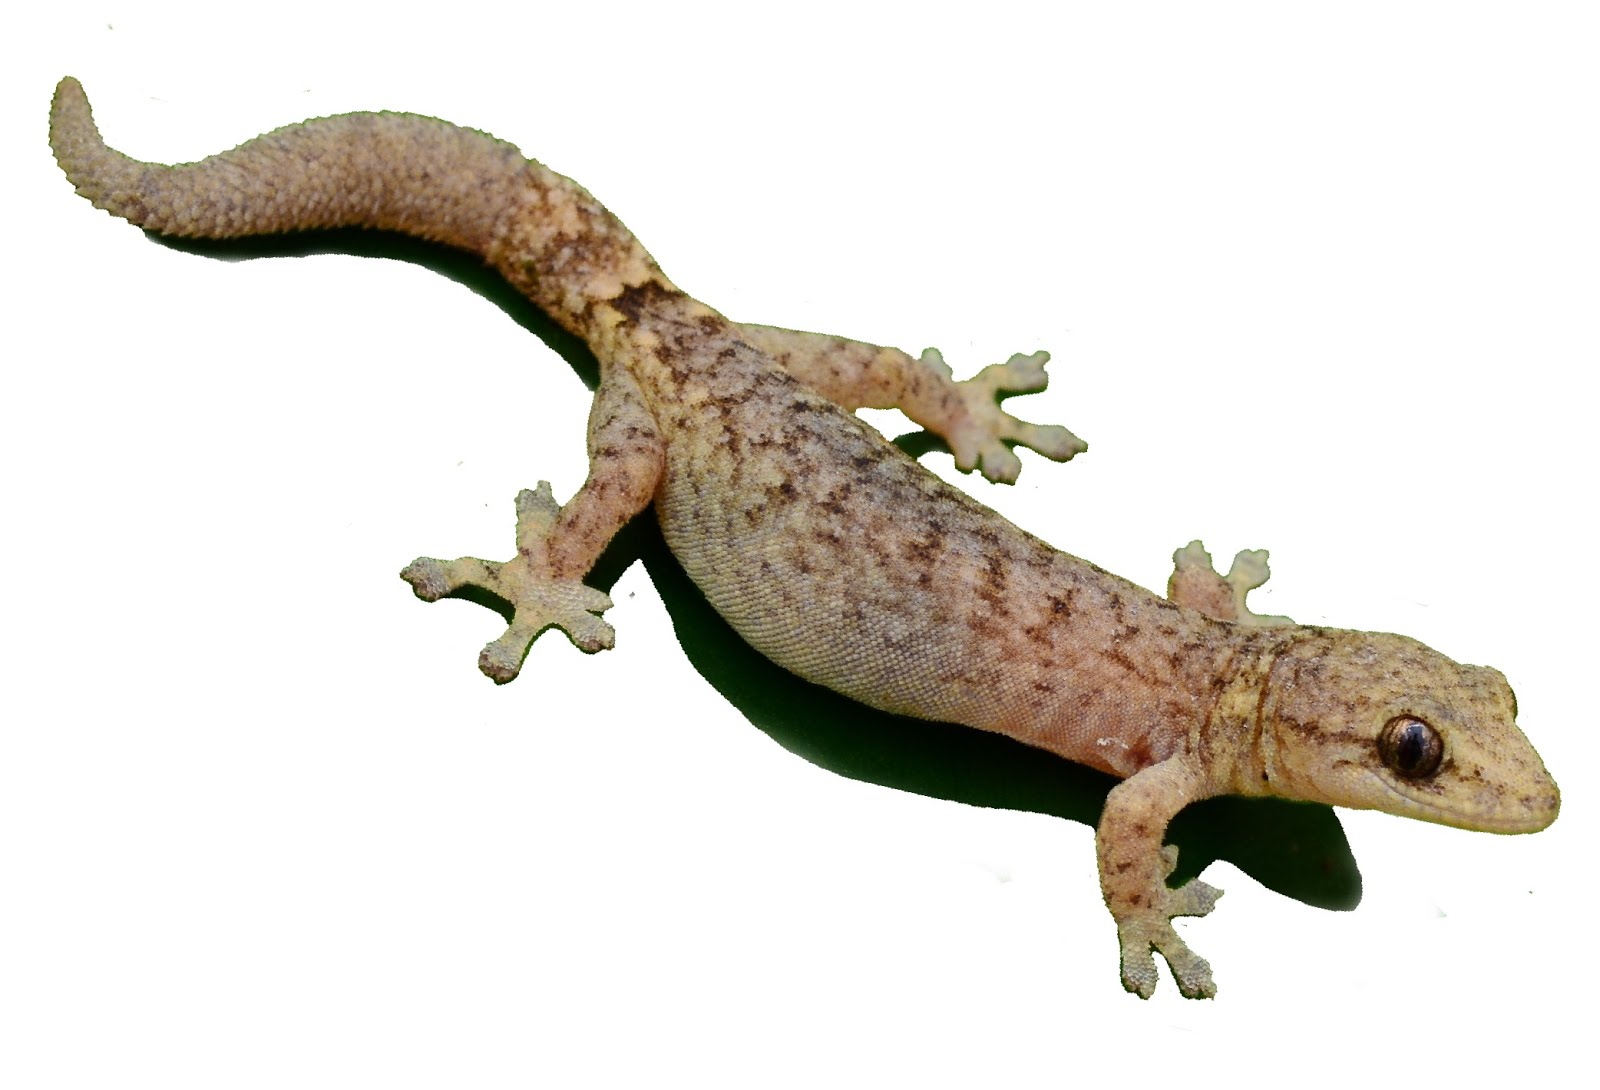 Hemiphyllodactylus ngwelwini